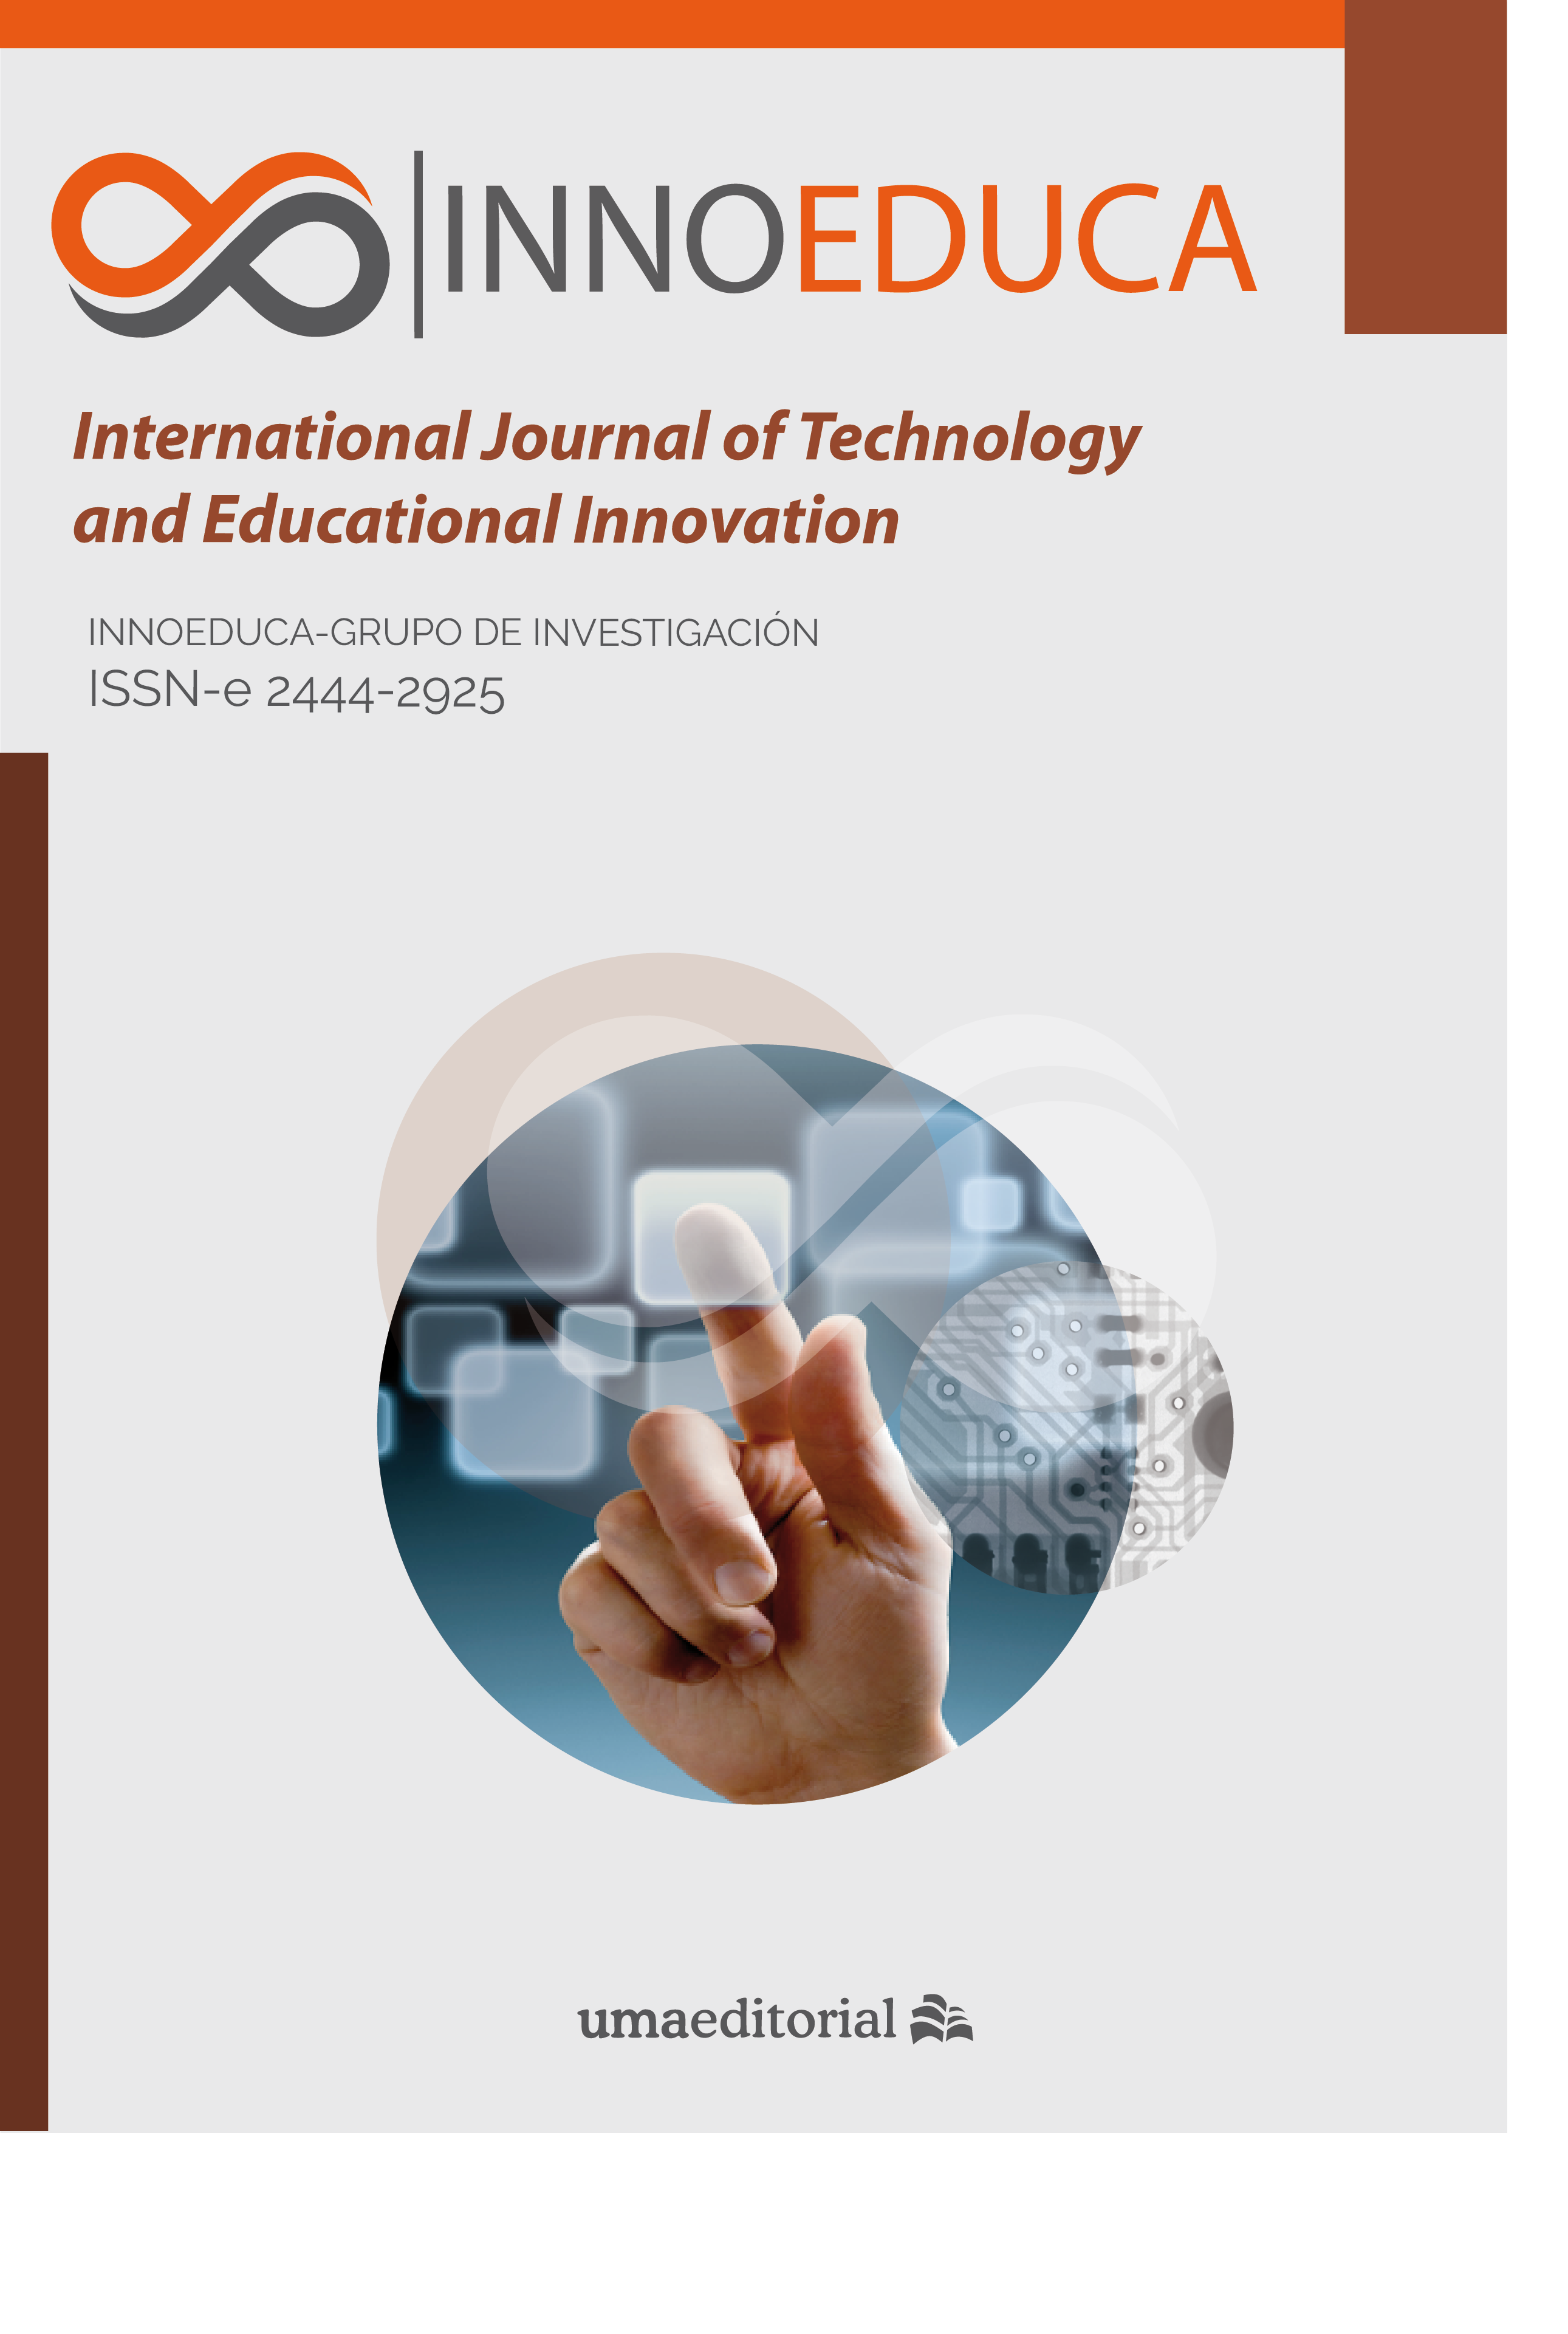 Aprendizaje basado en el modelo STEM y la clave de la metacognición |  Innoeduca. International Journal of Technology and Educational Innovation